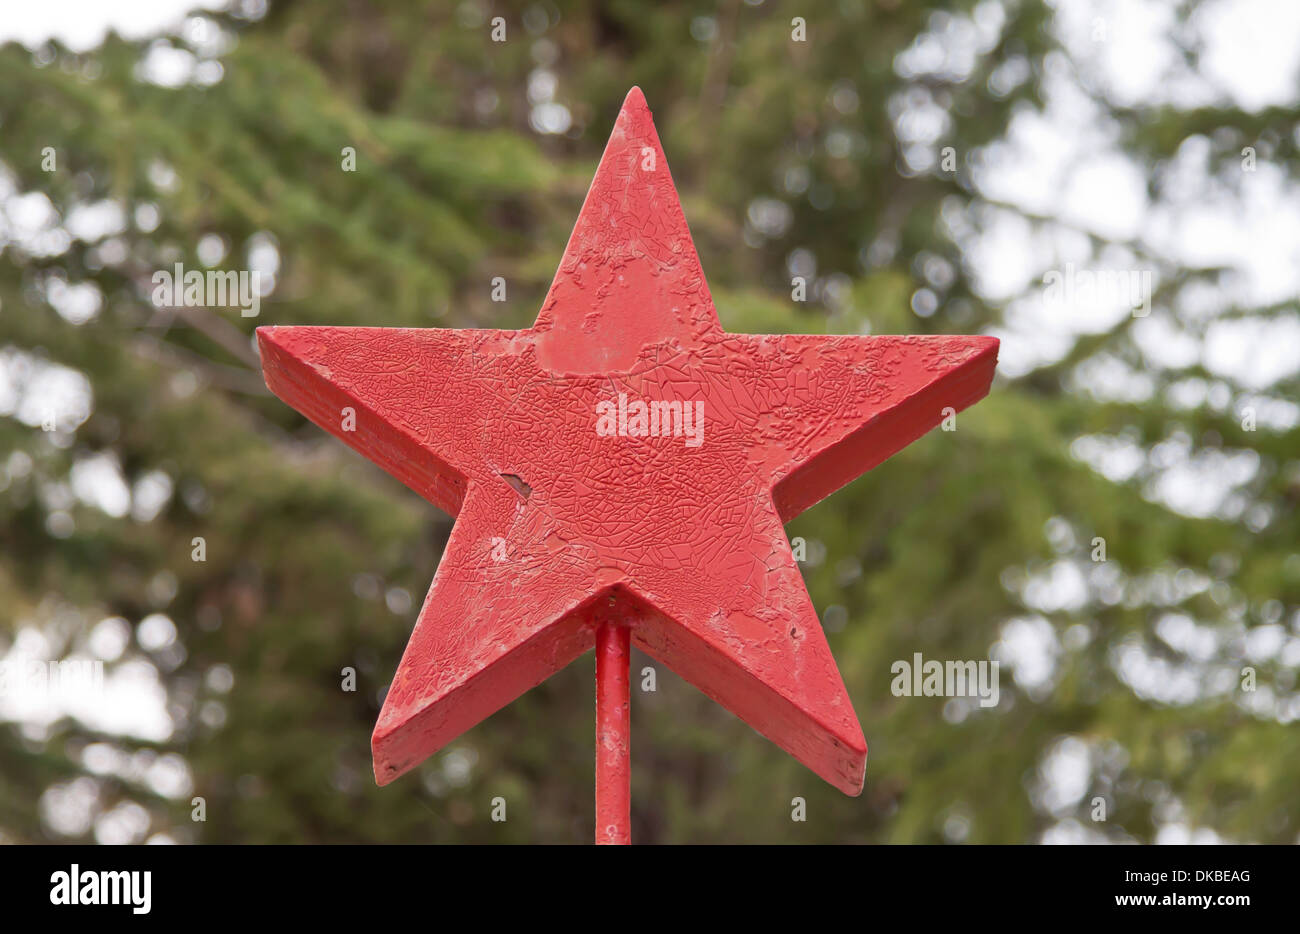 La estrella roja como símbolo de la anti-fascismo Foto de stock